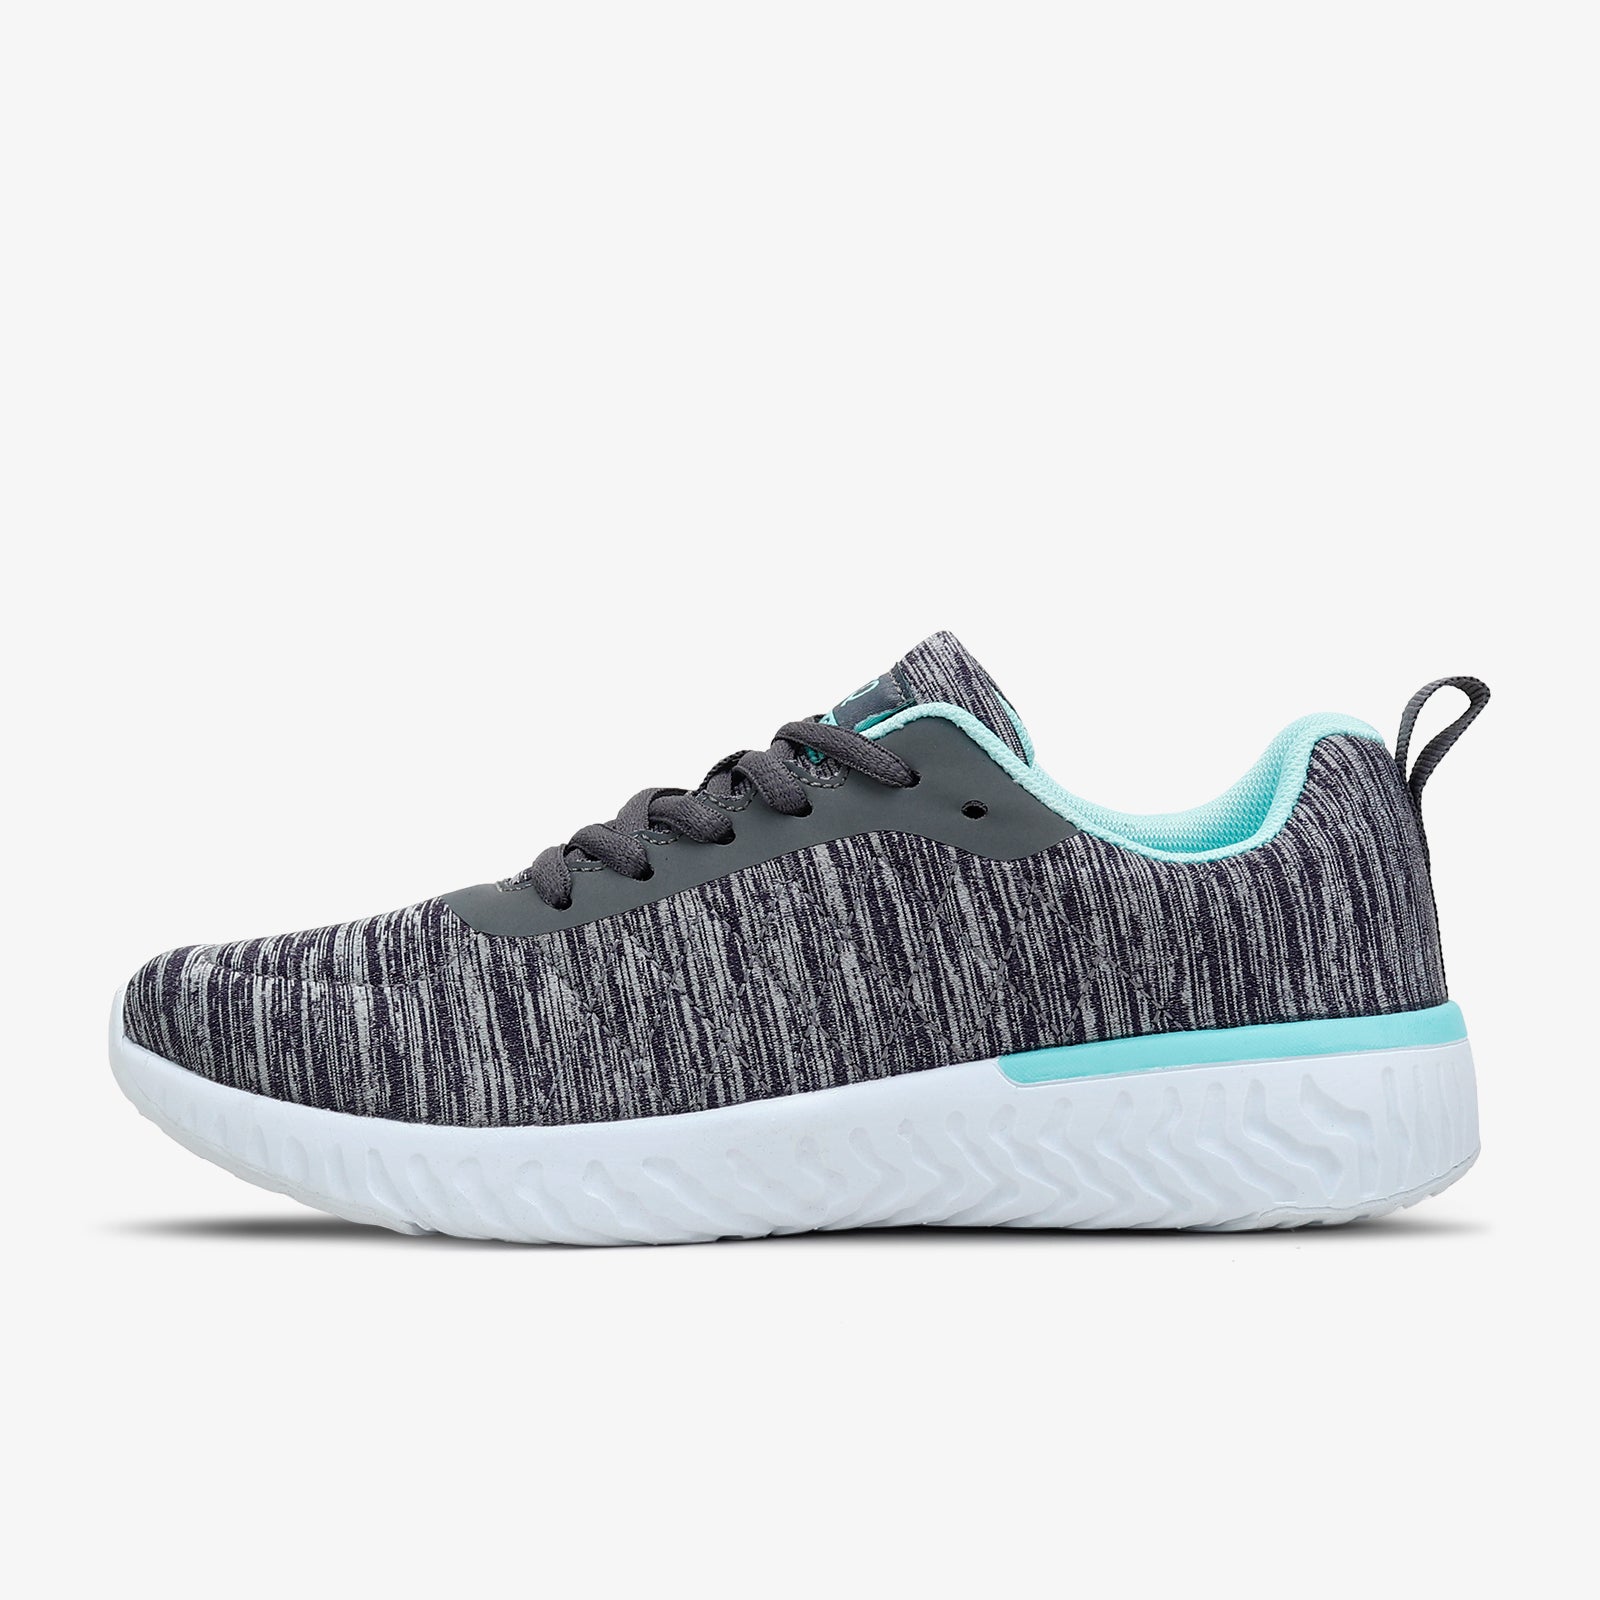 STQ Walking Shoes for Women Lace Up Lightweight Tennis Shoes Aqua/Grey / 5.5